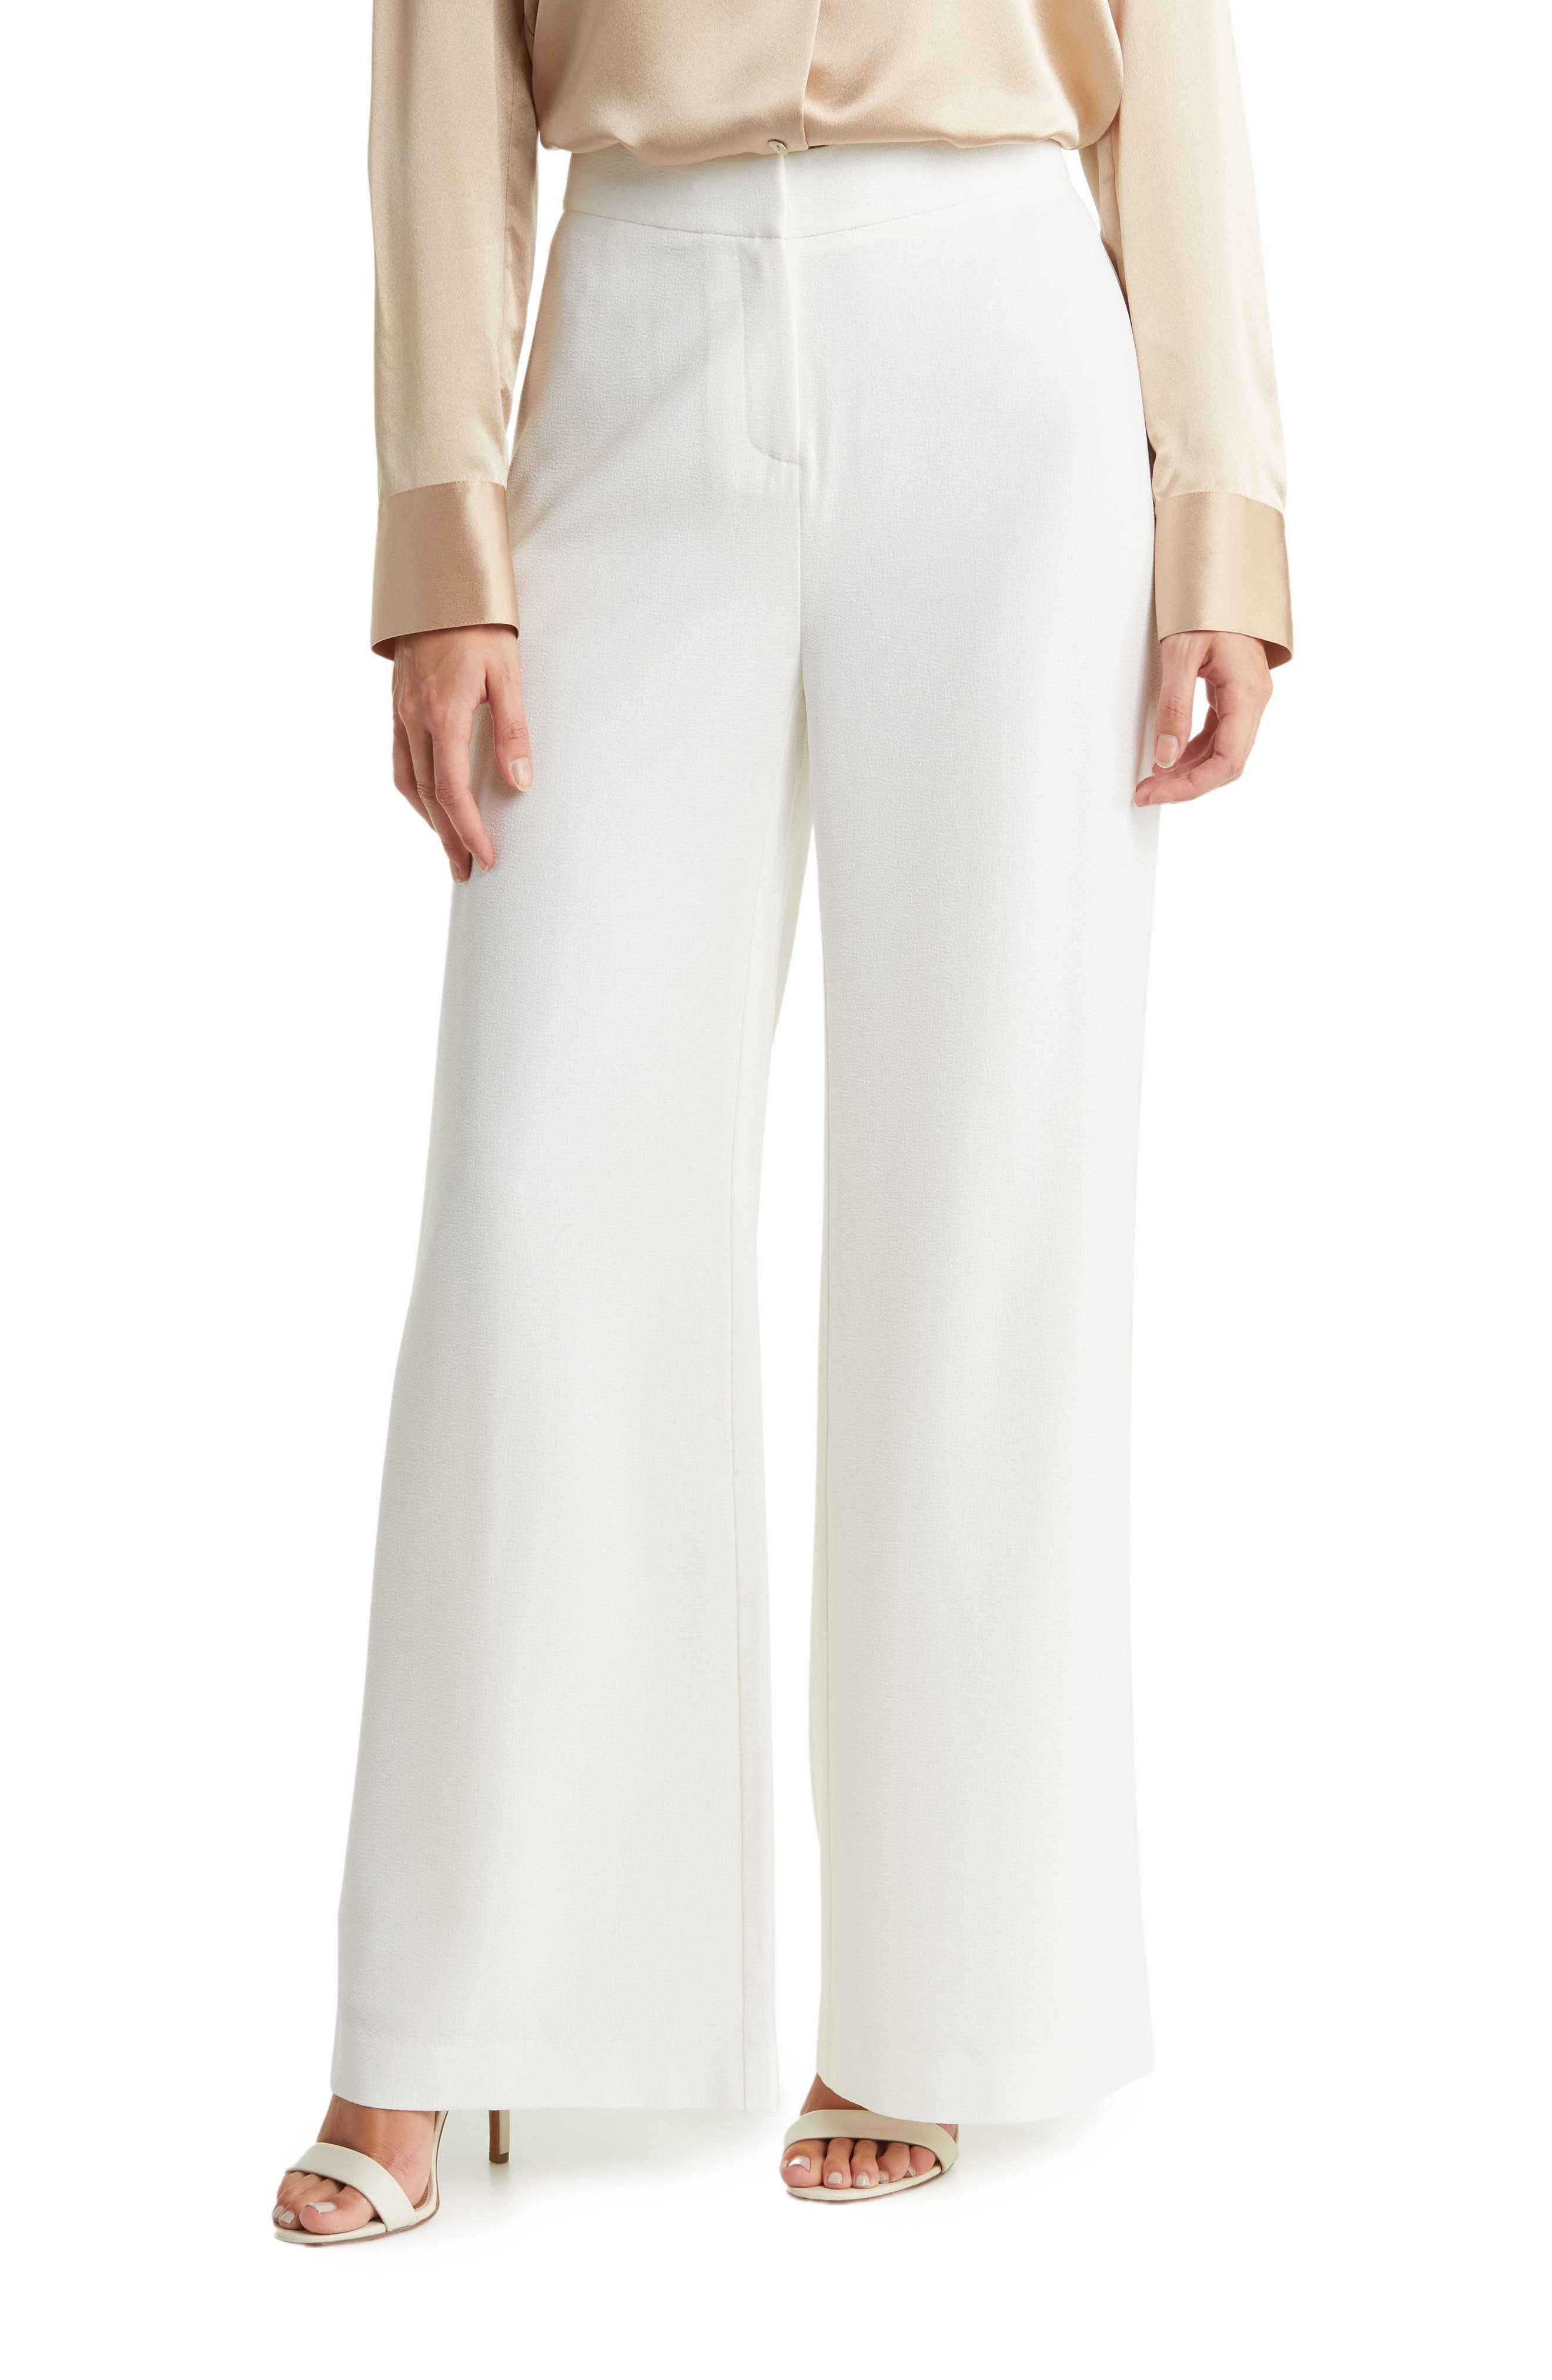 womens white dress pants